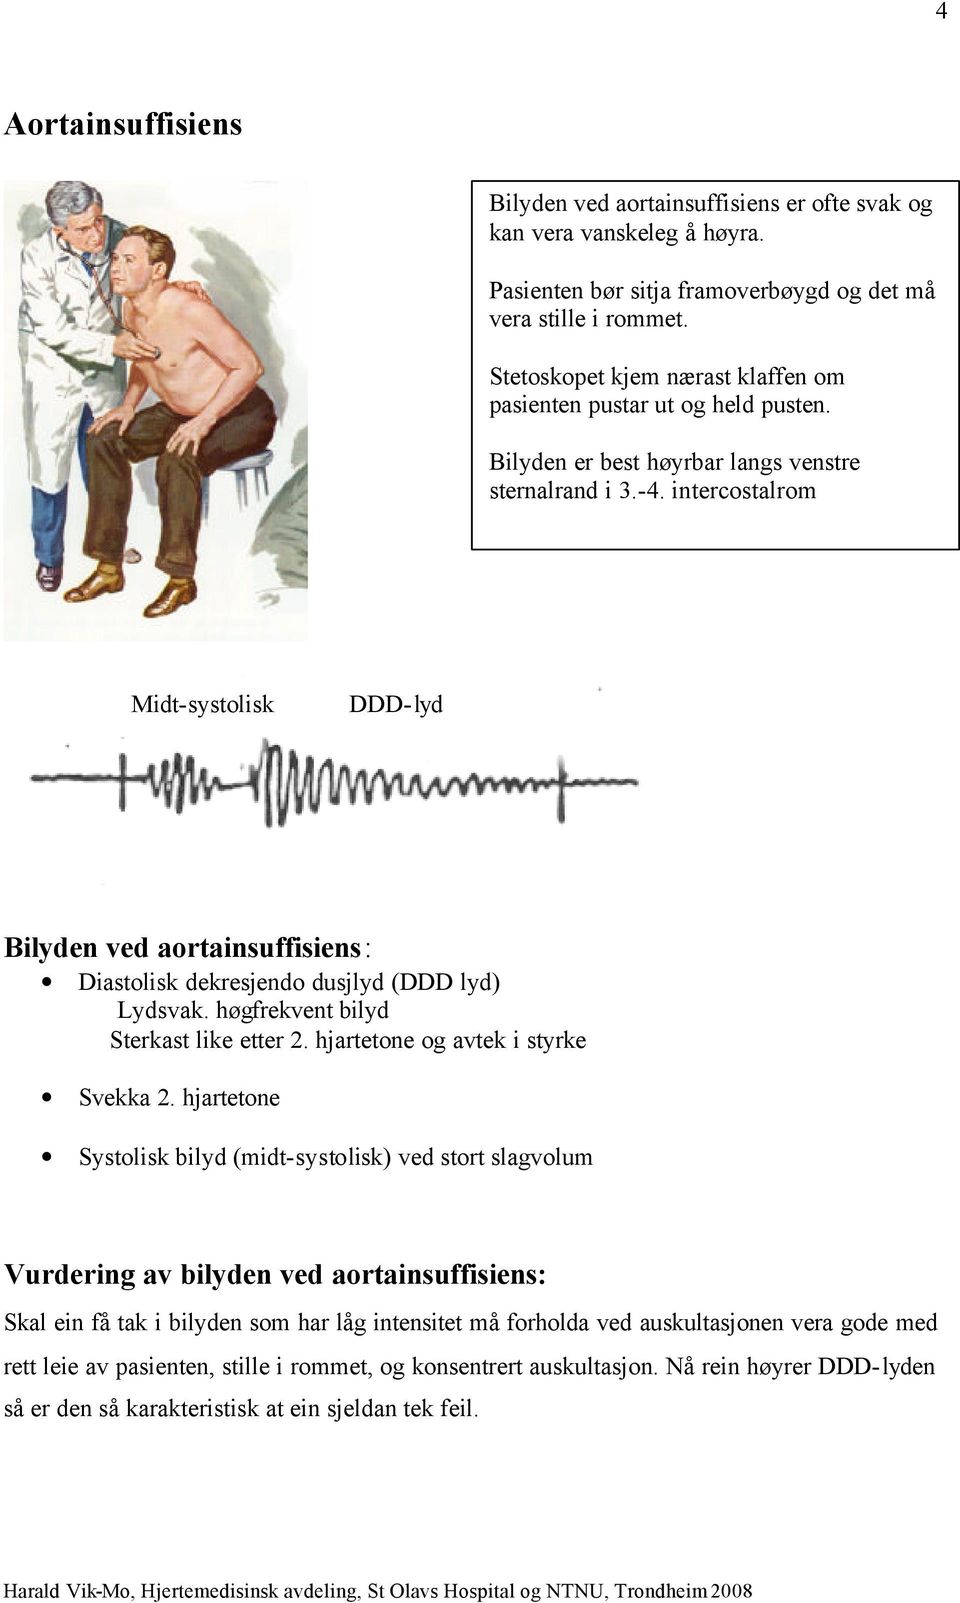 intercostalrom Midt-systolisk DDD-lyd Bilyden ved aortainsuffisiens: Diastolisk dekresjendo dusjlyd (DDD lyd) Lydsvak. høgfrekvent bilyd Sterkast like etter 2. hjartetone og avtek i styrke Svekka 2.